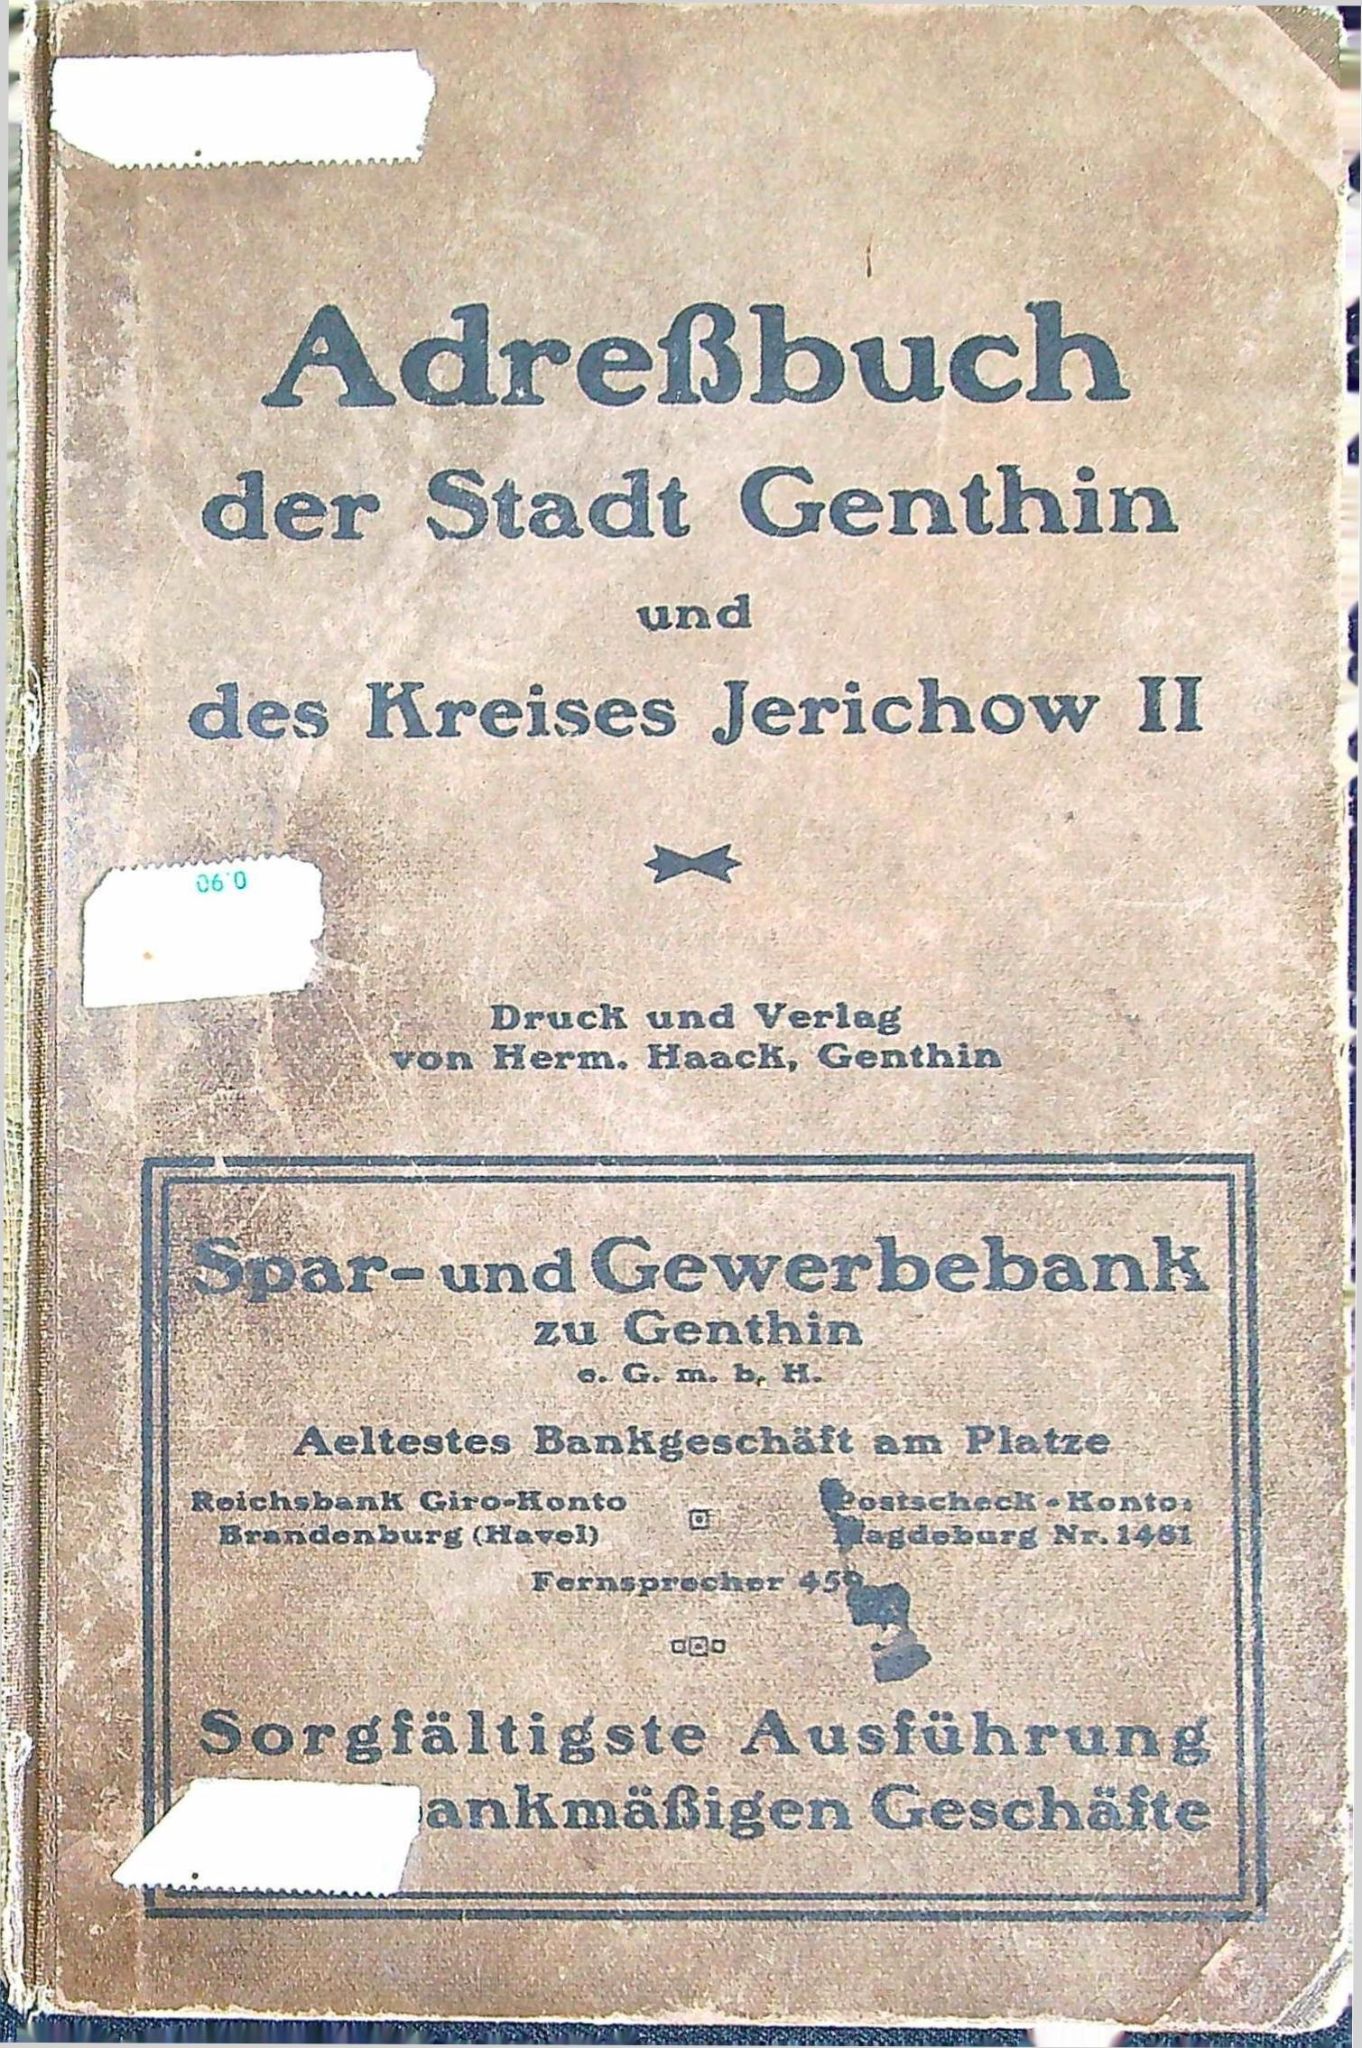 Adreßbuch der Stadt Genthin und des Kreises Jerichow II - 1926